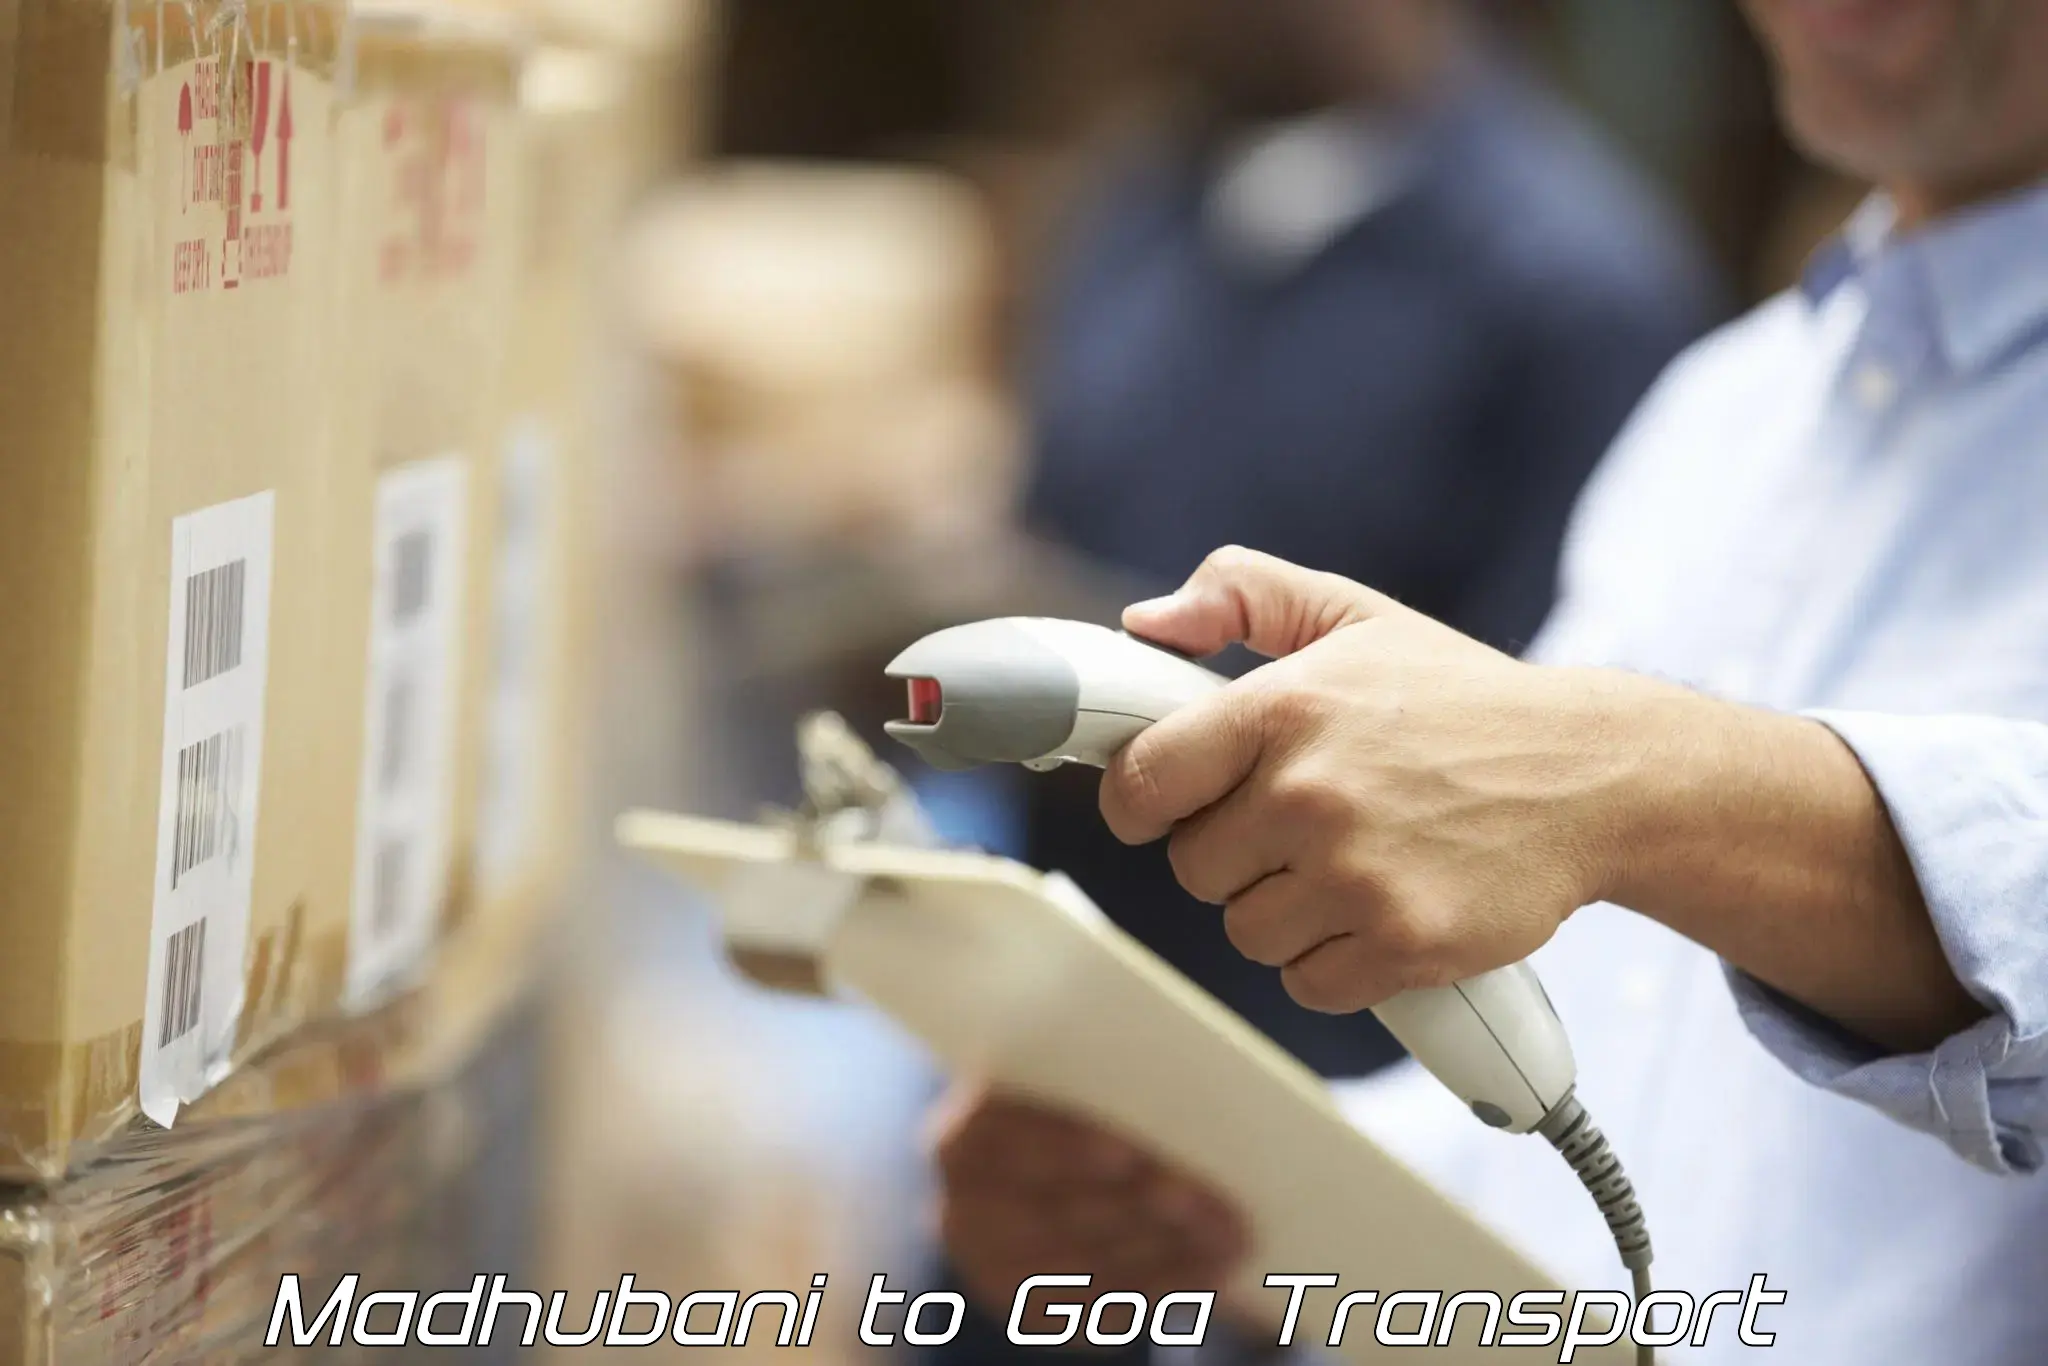 Commercial transport service Madhubani to Goa